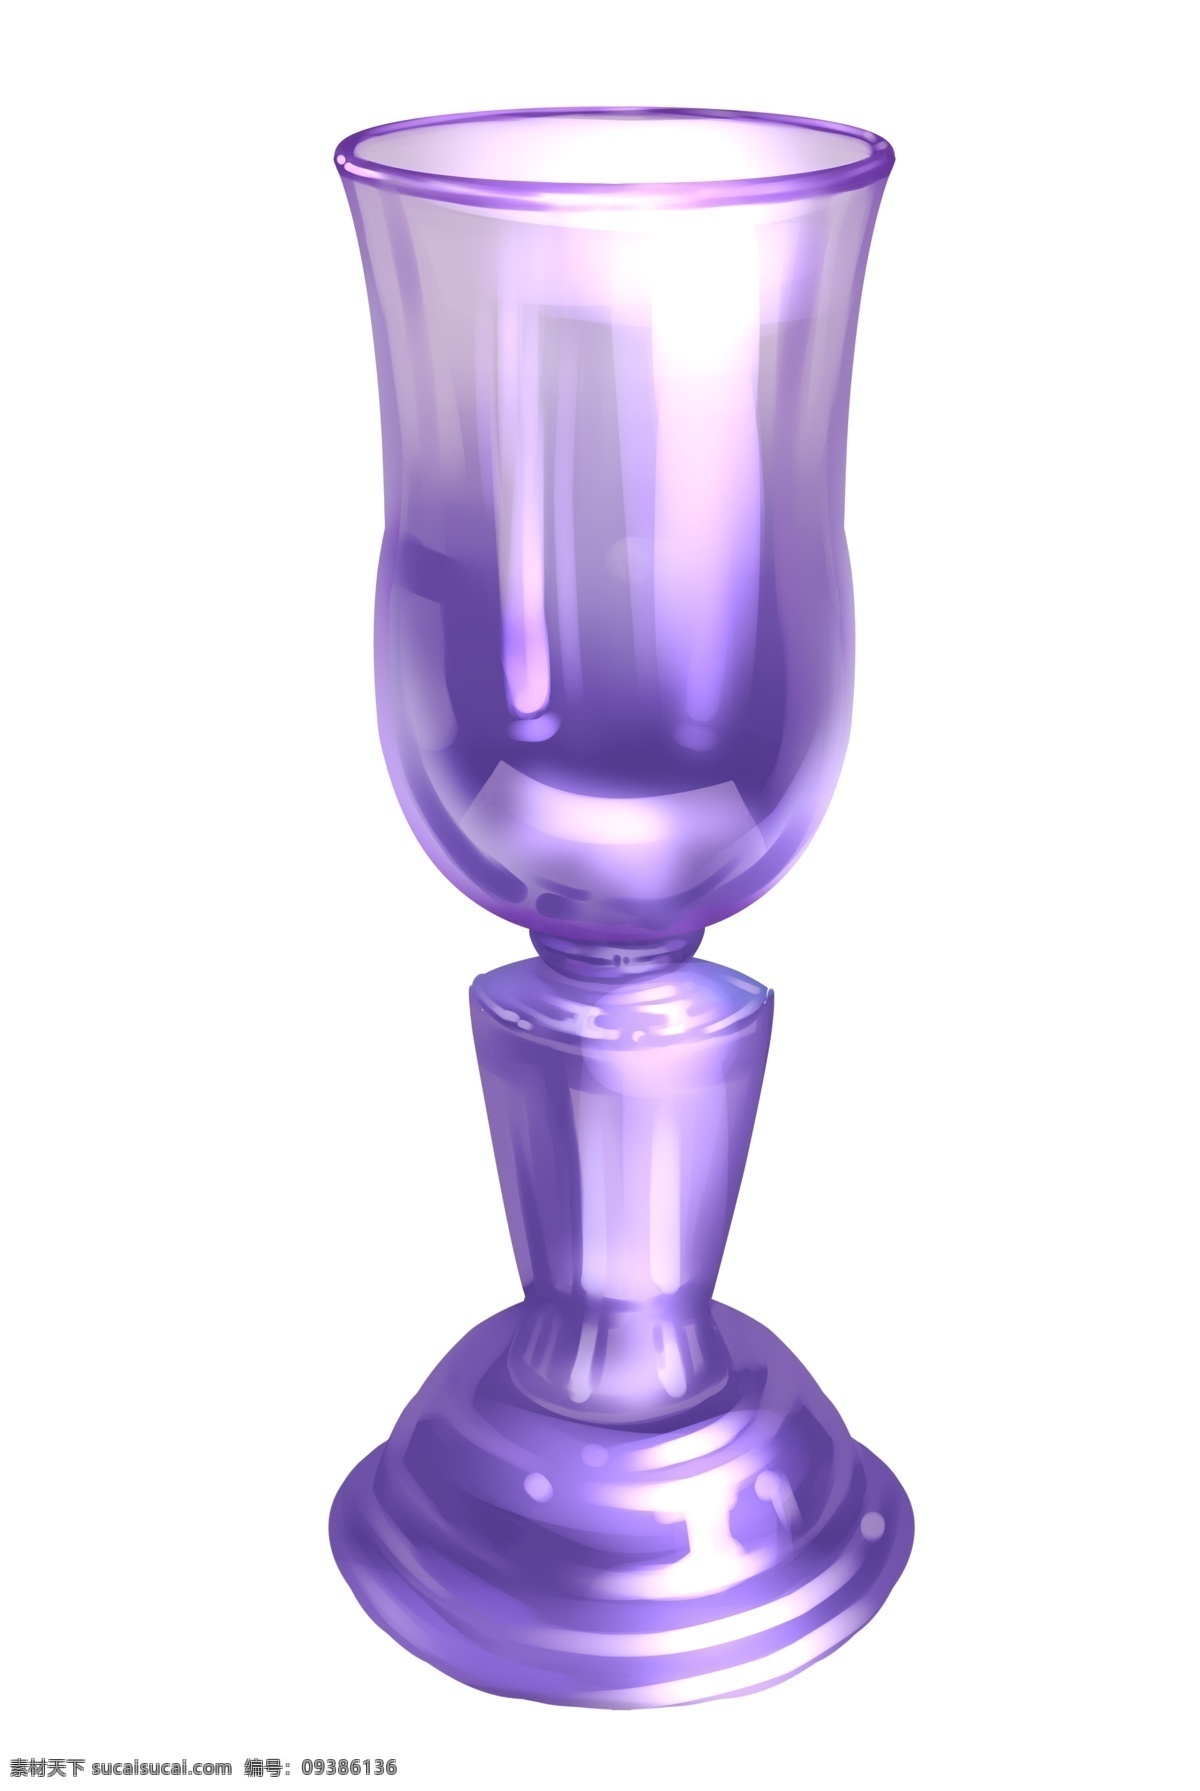 紫色 玻璃 酒杯 插画 紫色的酒杯 玻璃杯 高脚杯 艺术 摆件 工艺品 玻璃制品 卡通酒杯 红酒杯 杯具插画